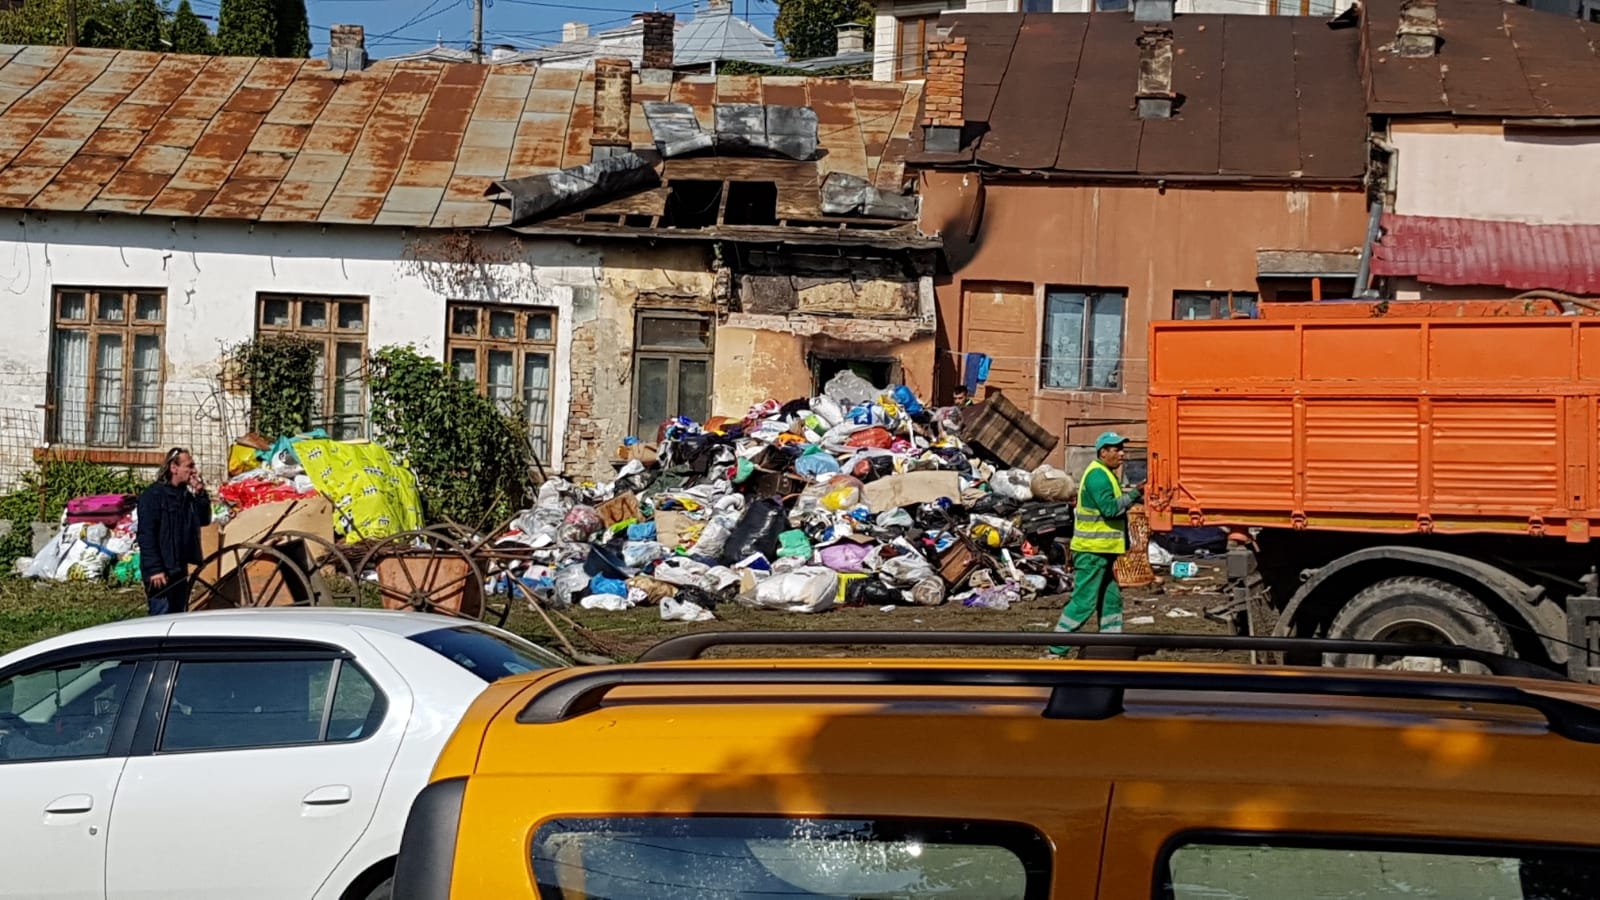  FOTO: Munți de gunoaie în casa unor romi din Păcurari. Muncitorii încarcă camioane